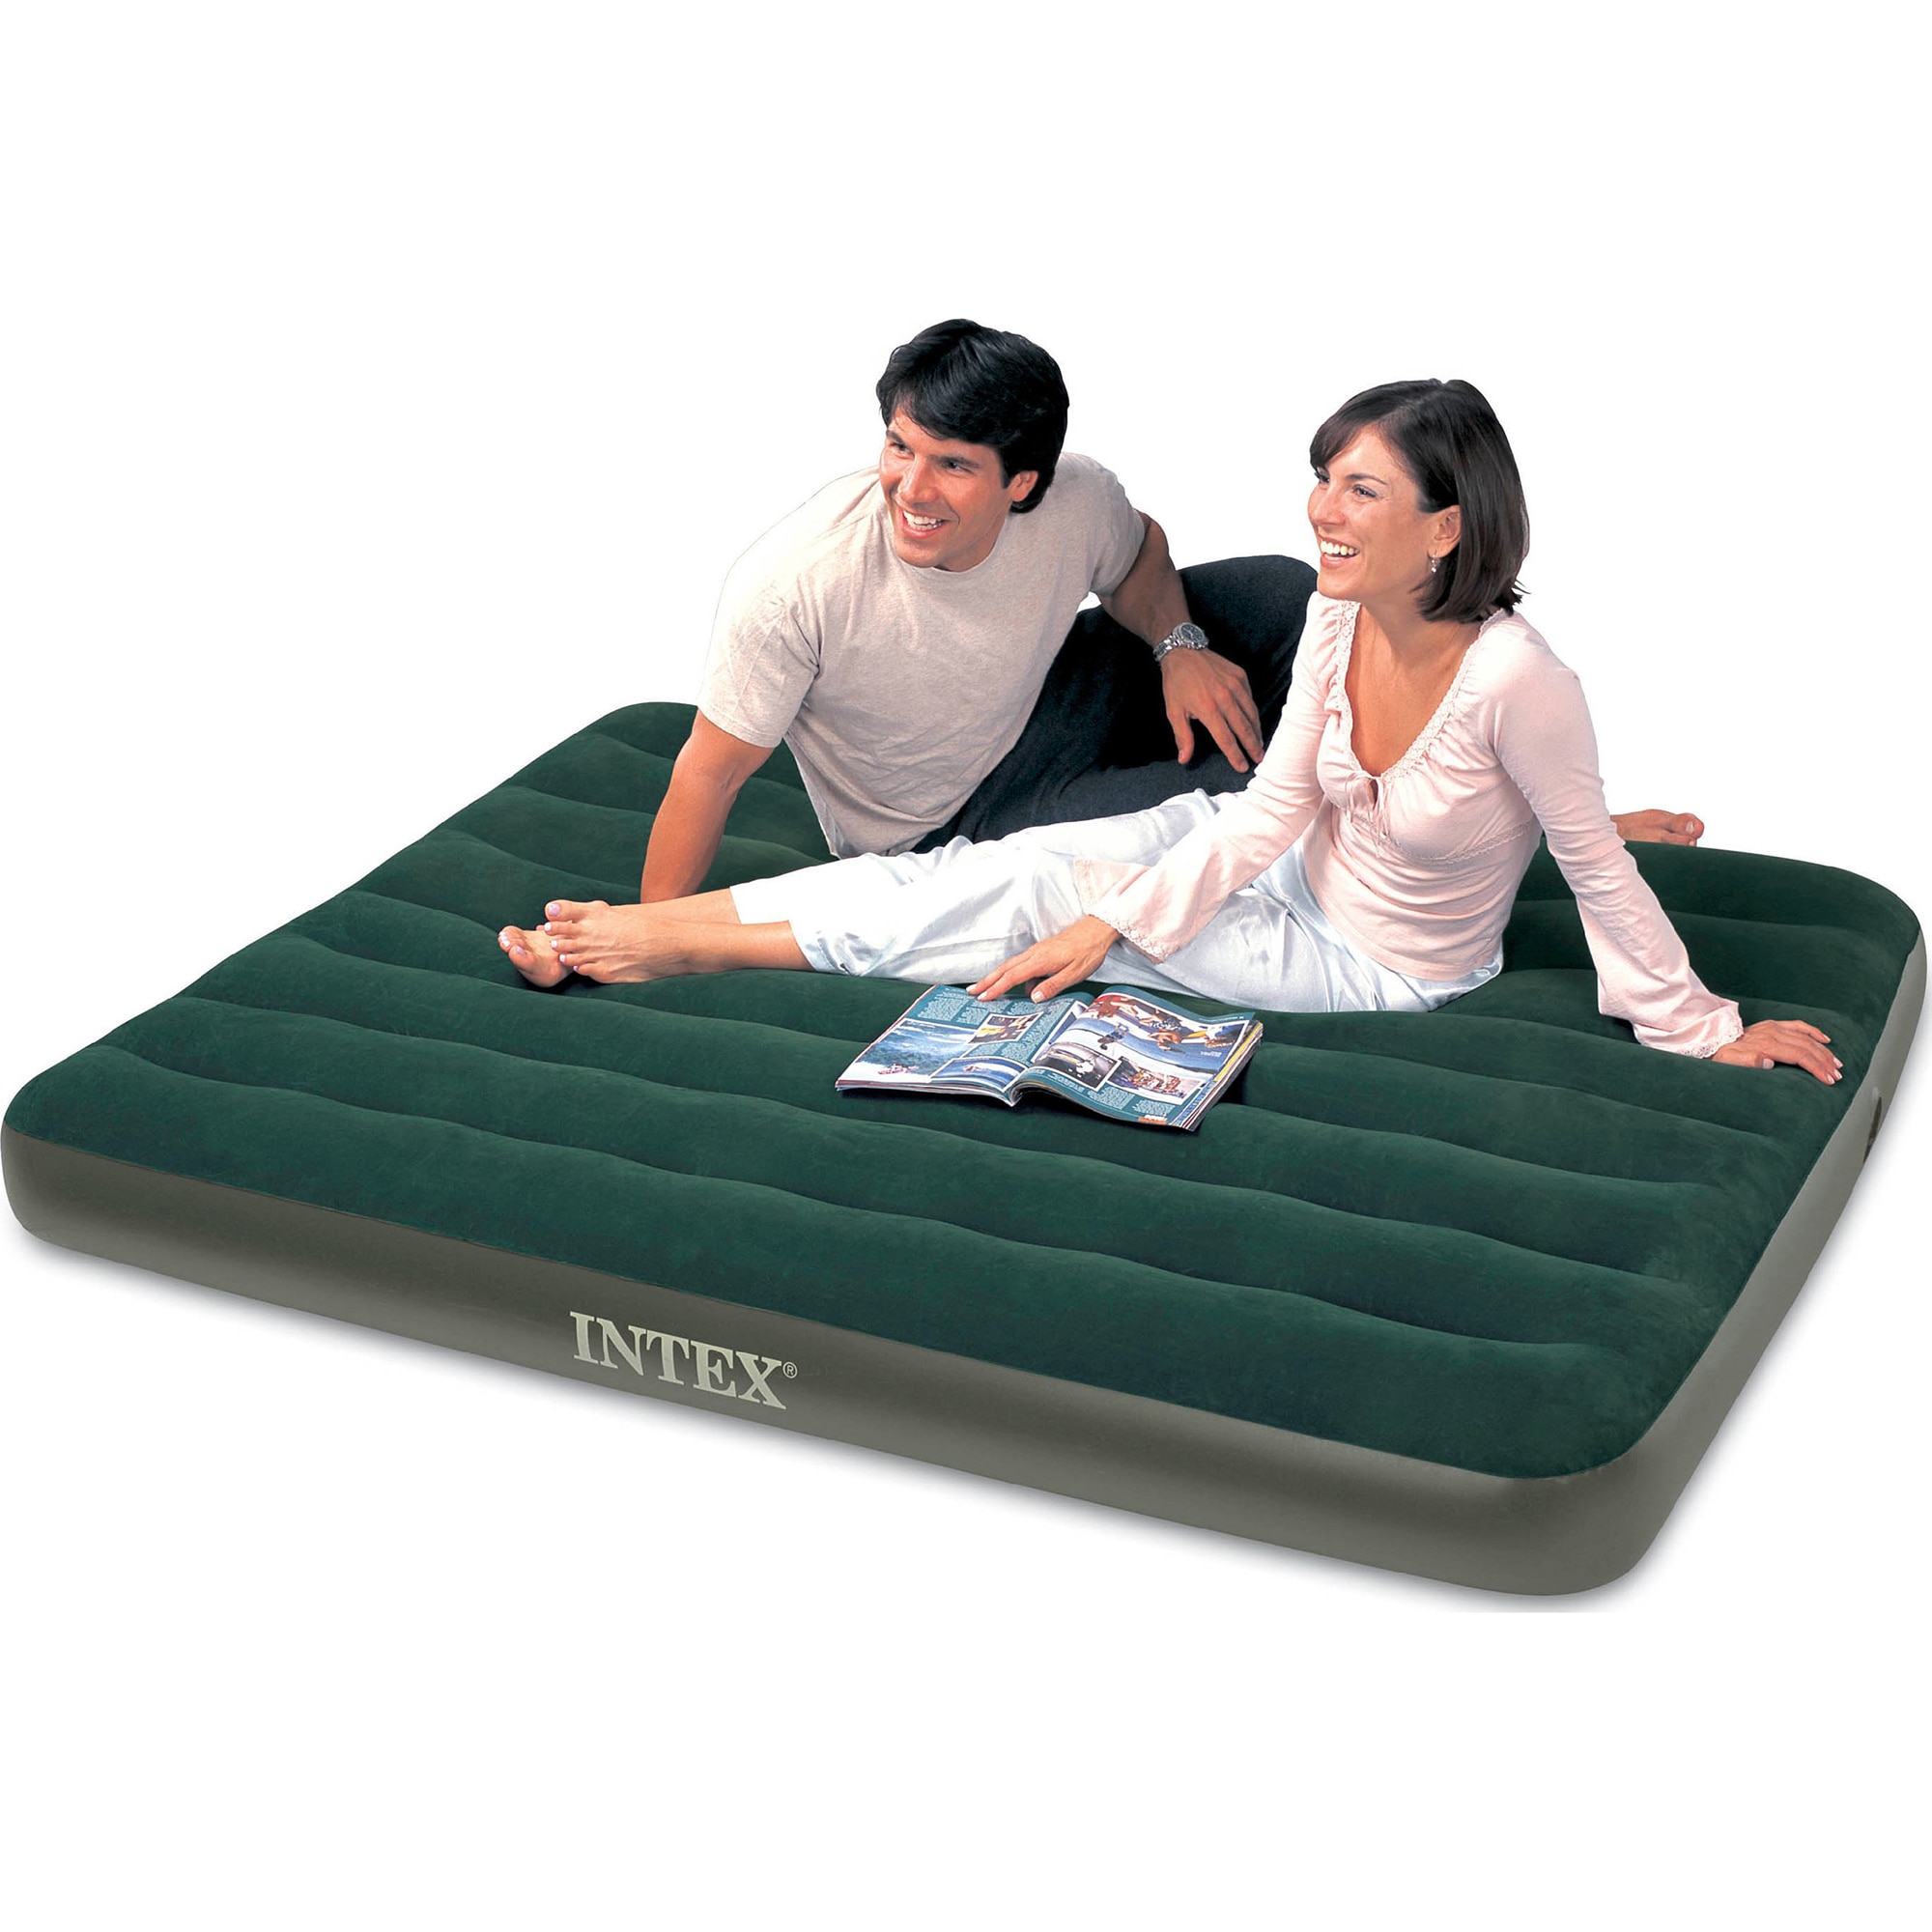 размер надувного матраса 2 спального intex